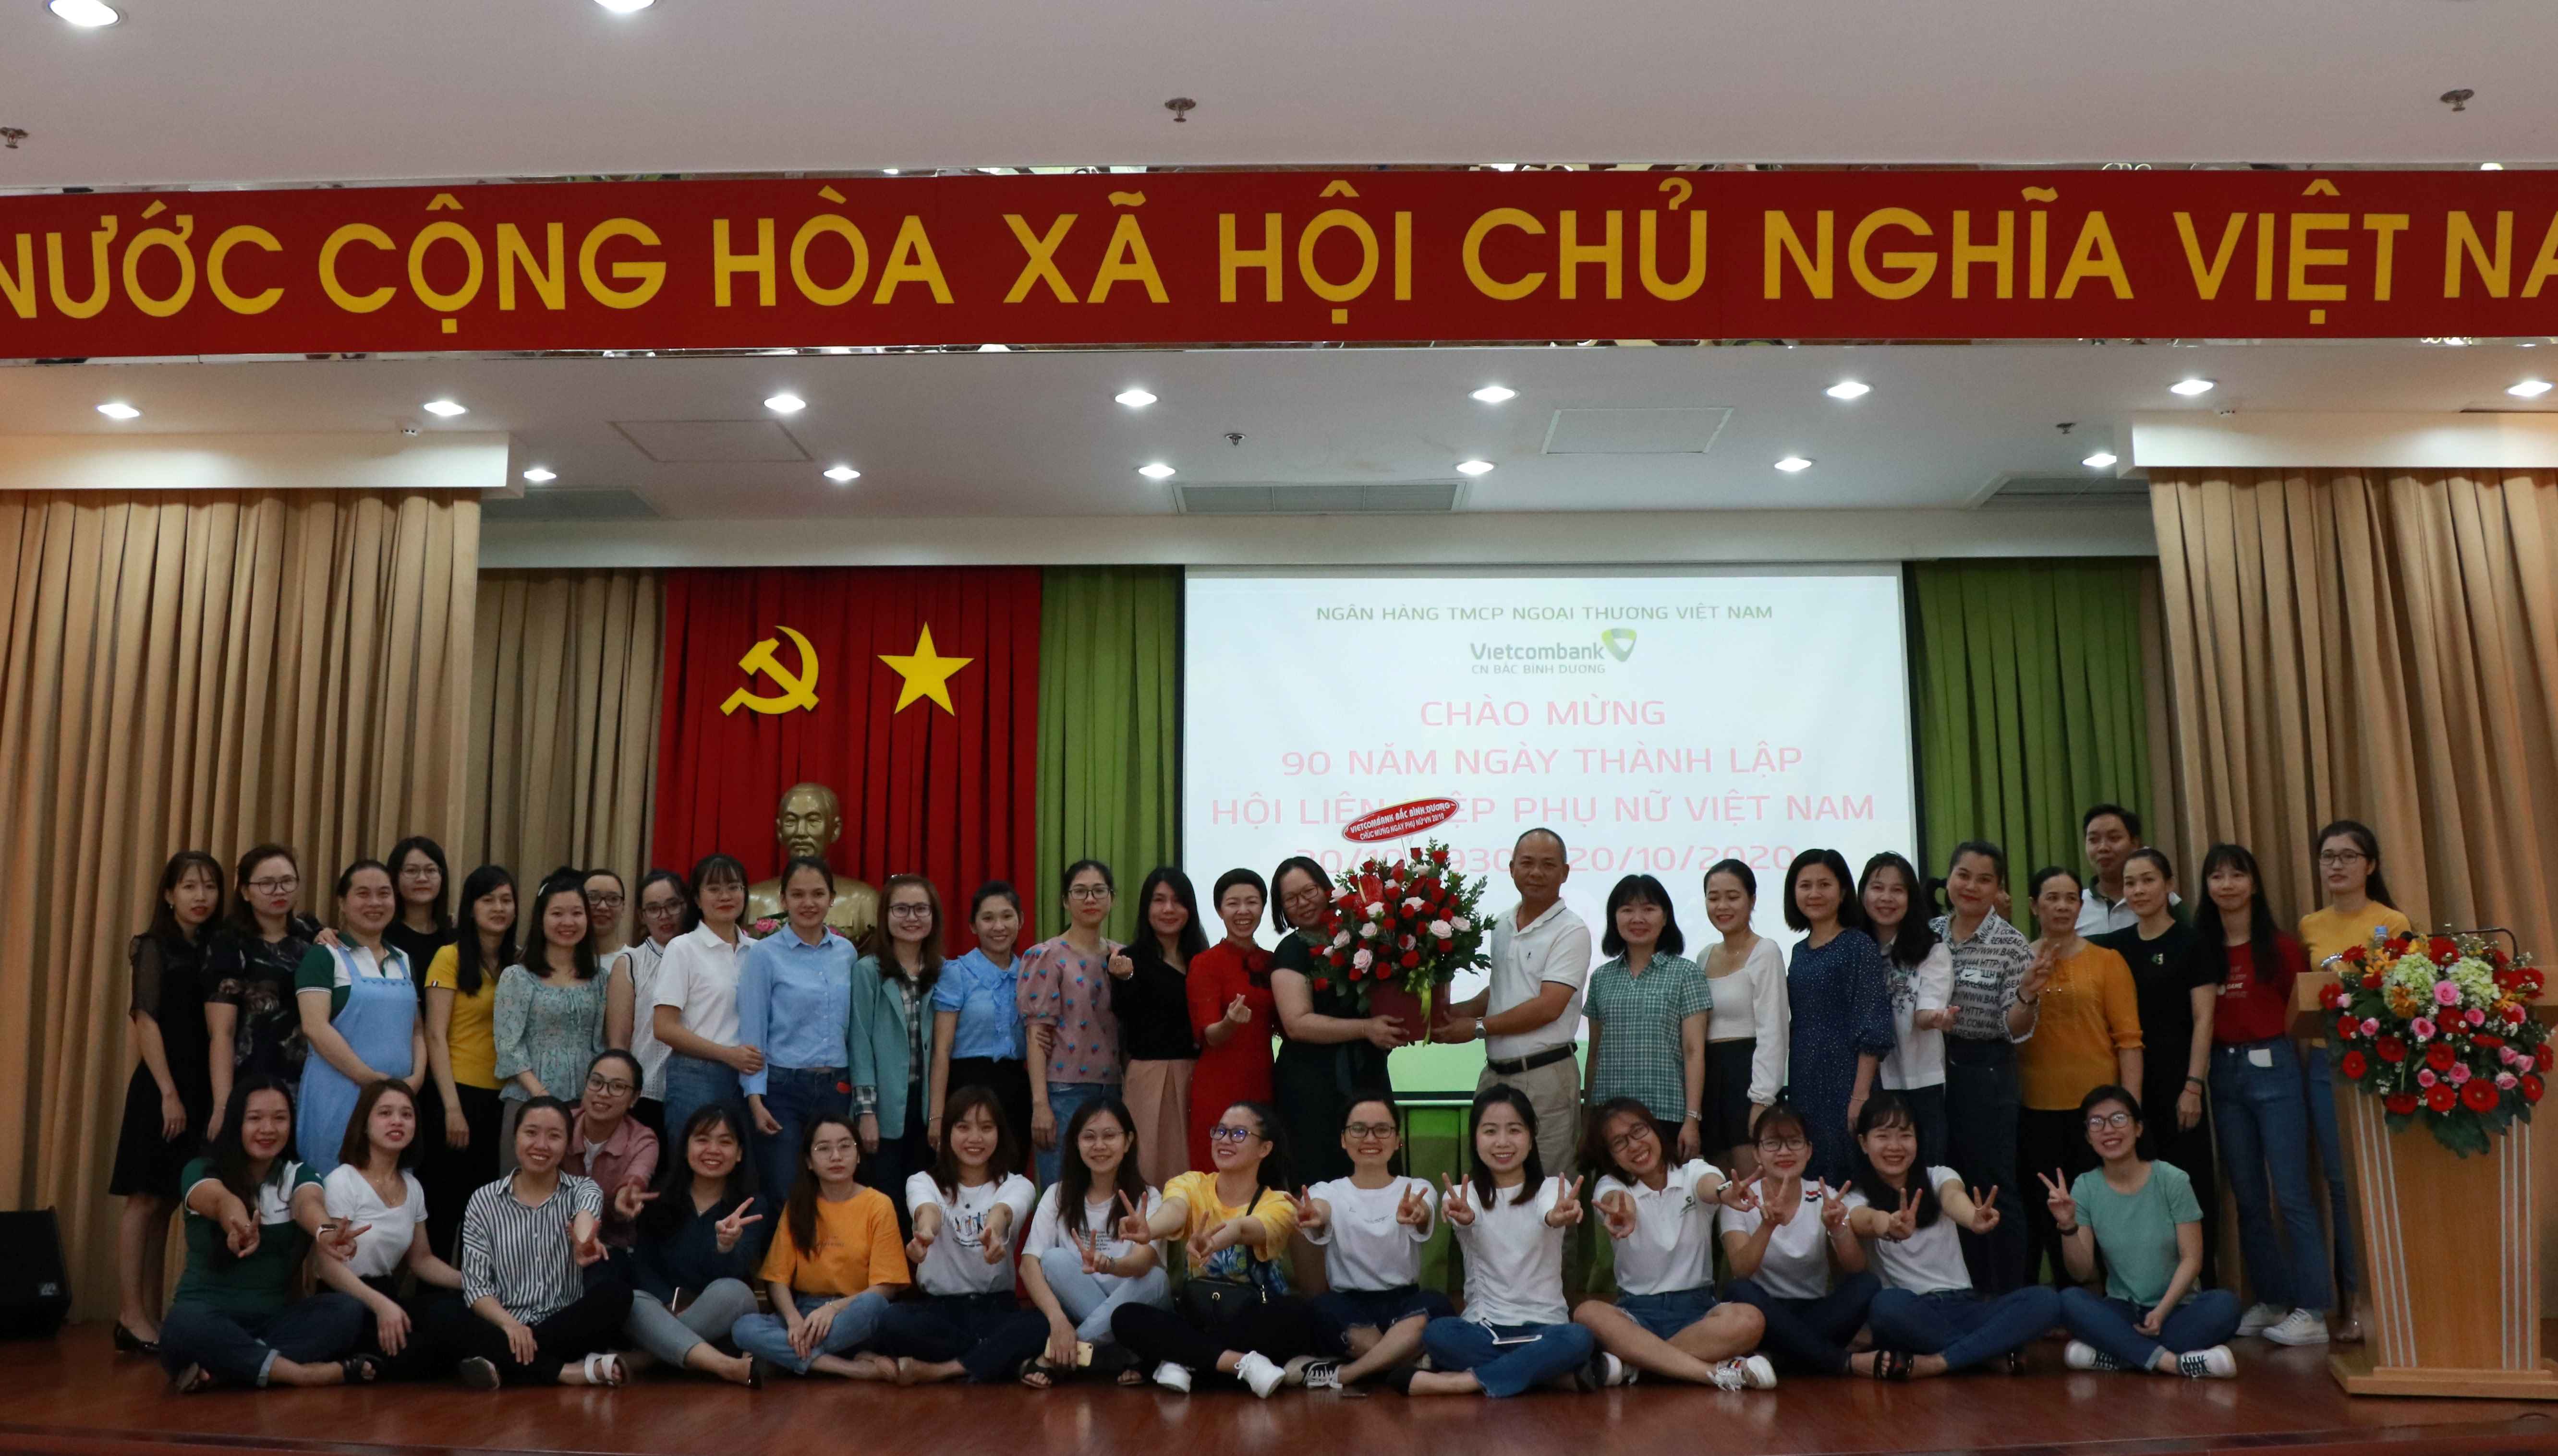 Đoàn cơ sở Vietcombank Bắc Bình Dương chào mừng 90 năm ngày thành lập Hội liên hiệp phụ nữ Việt Nam